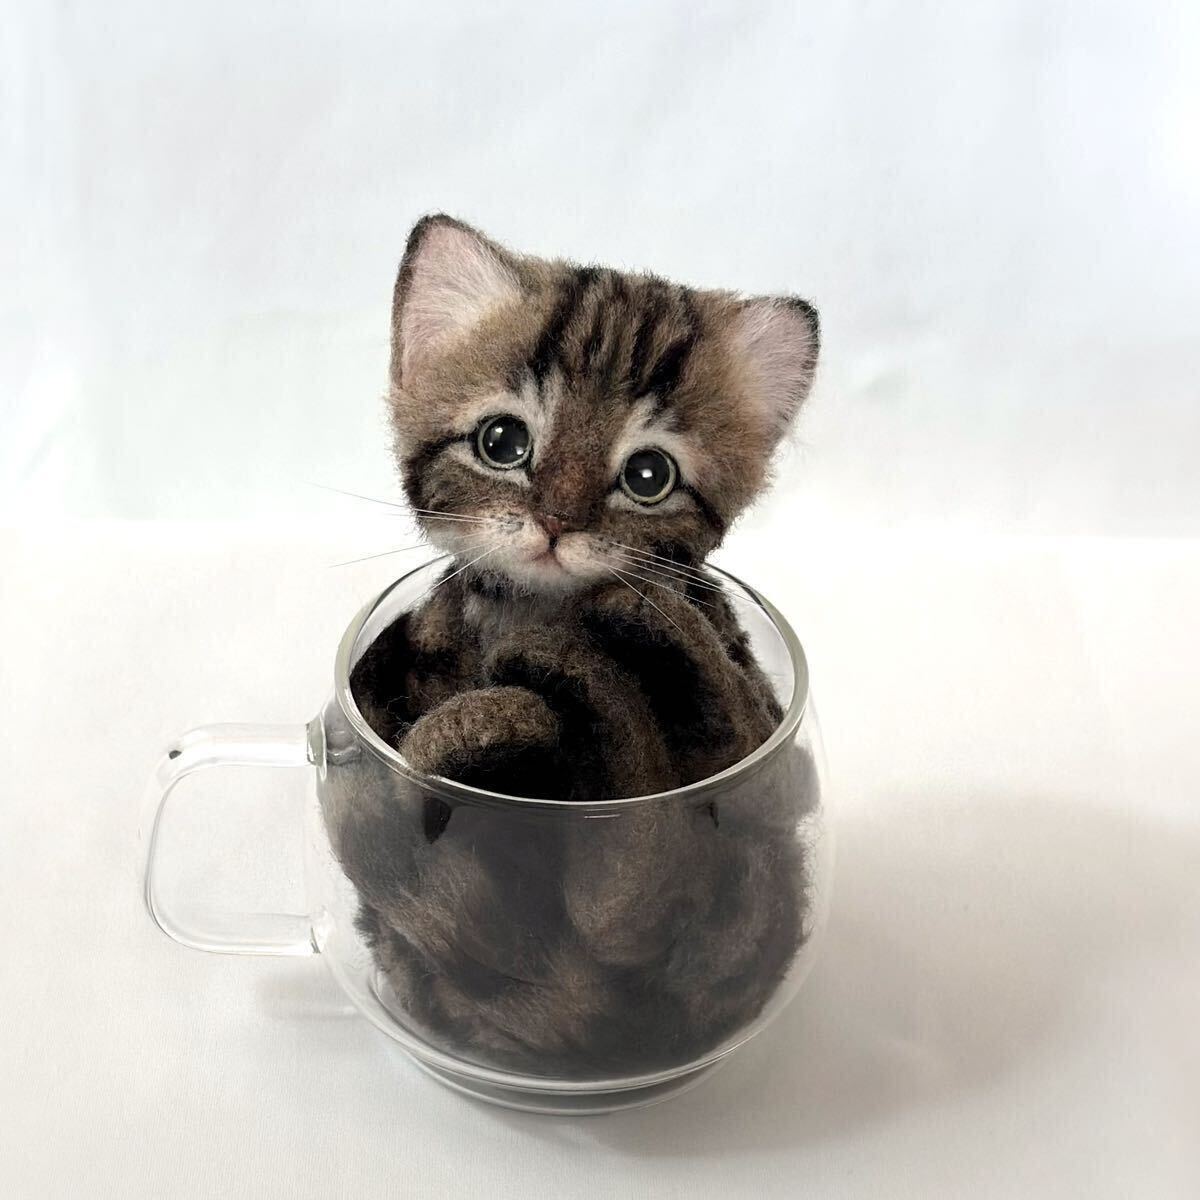 内纳科。 Kijitora小猫茶杯猫液体猫羊毛毡真实尺寸棕色虎斑手工制作, 玩具, 游戏, 毛绒玩具, 羊毛毡